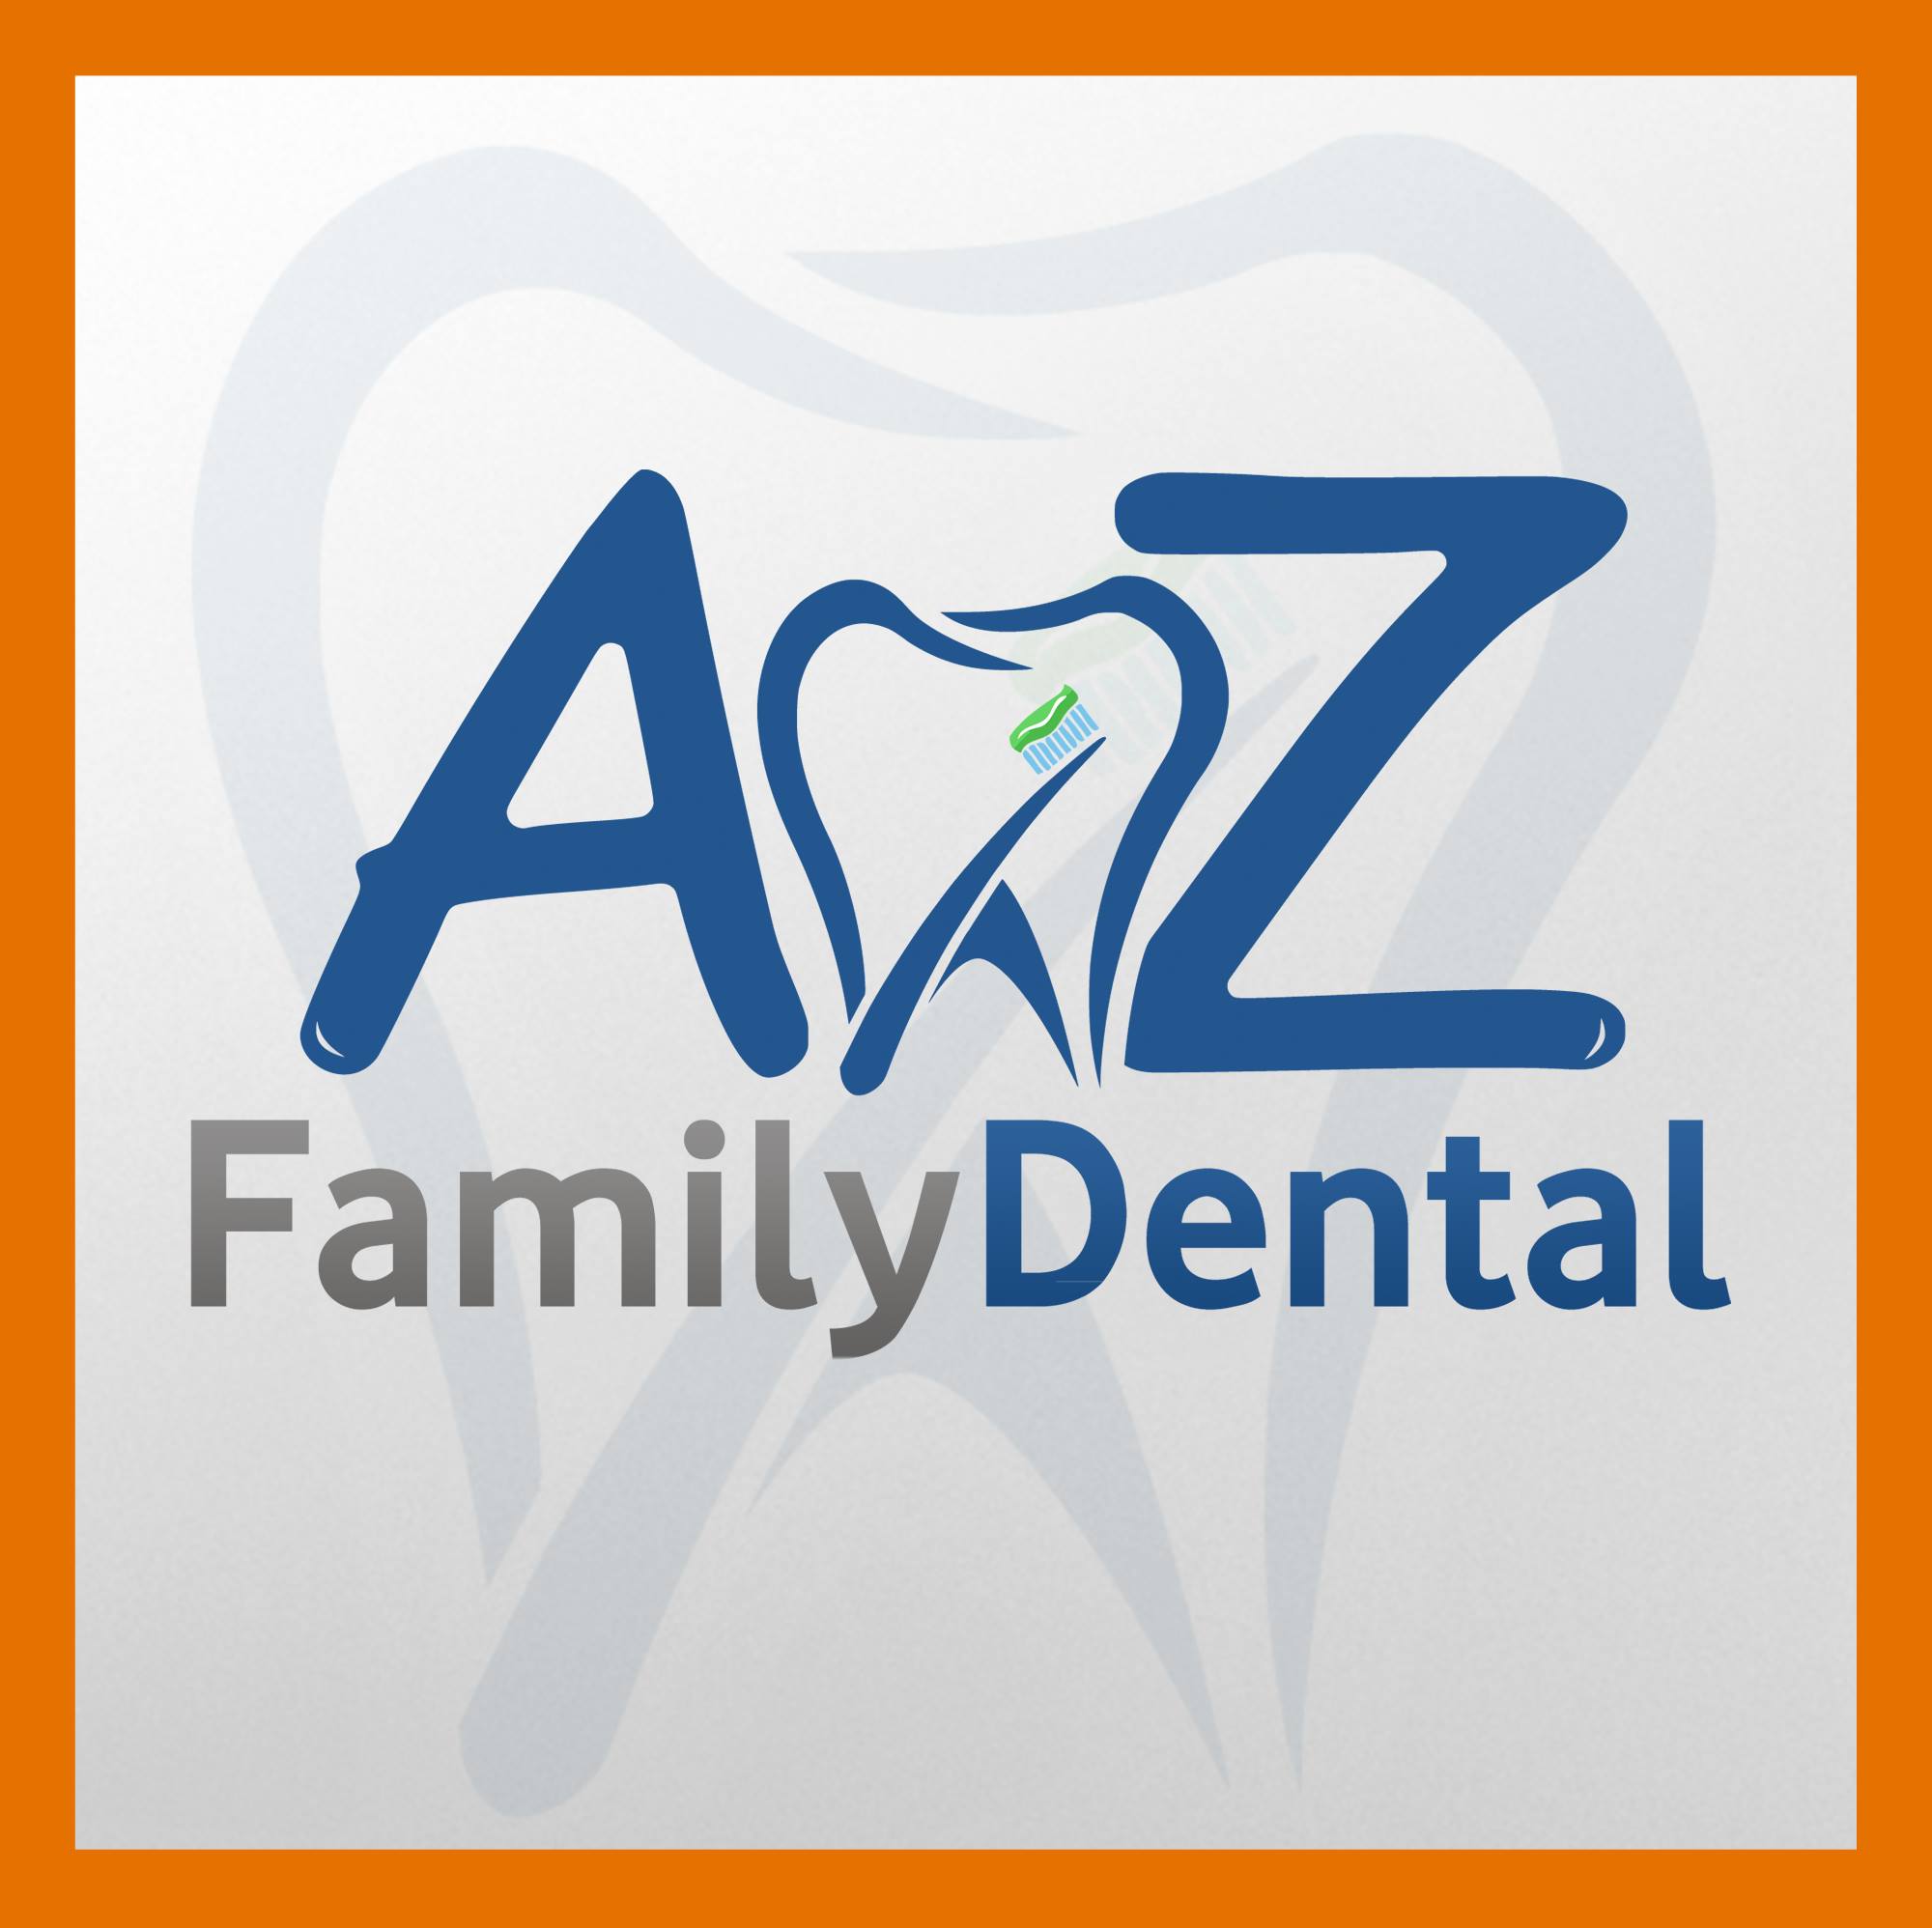 Company logo of AZ Family Dental